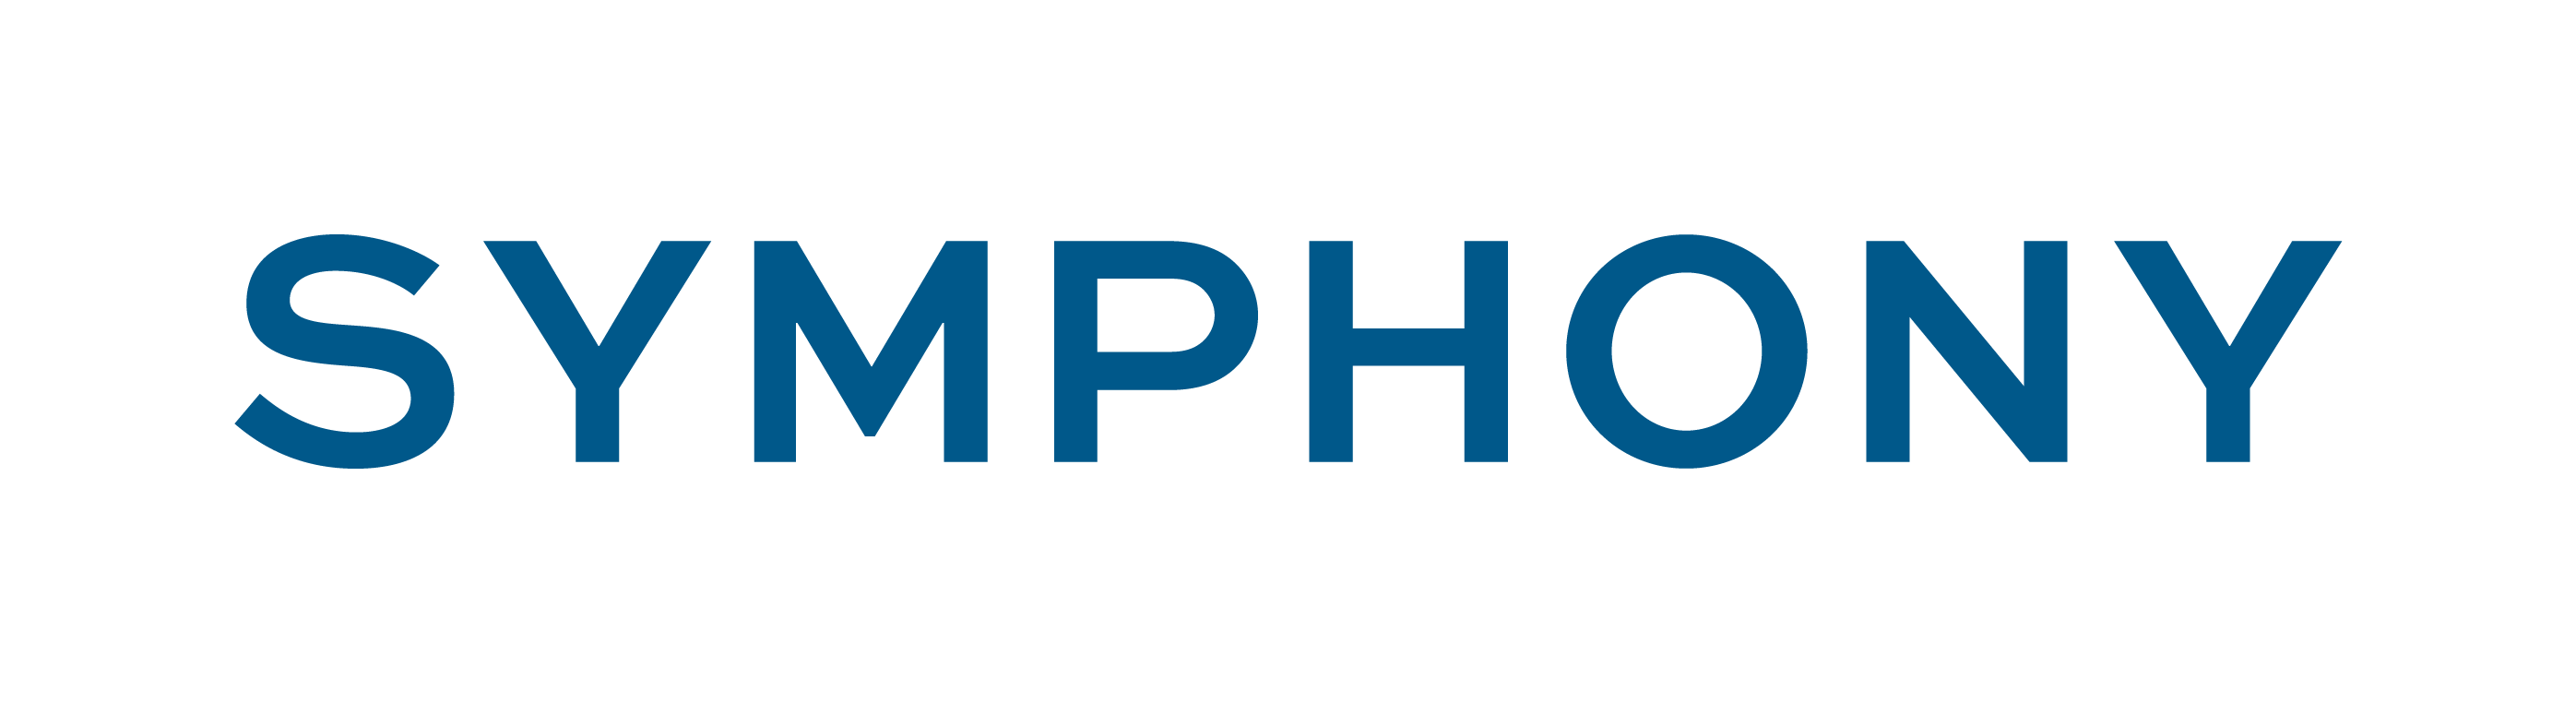 Symphony Logo - Resources